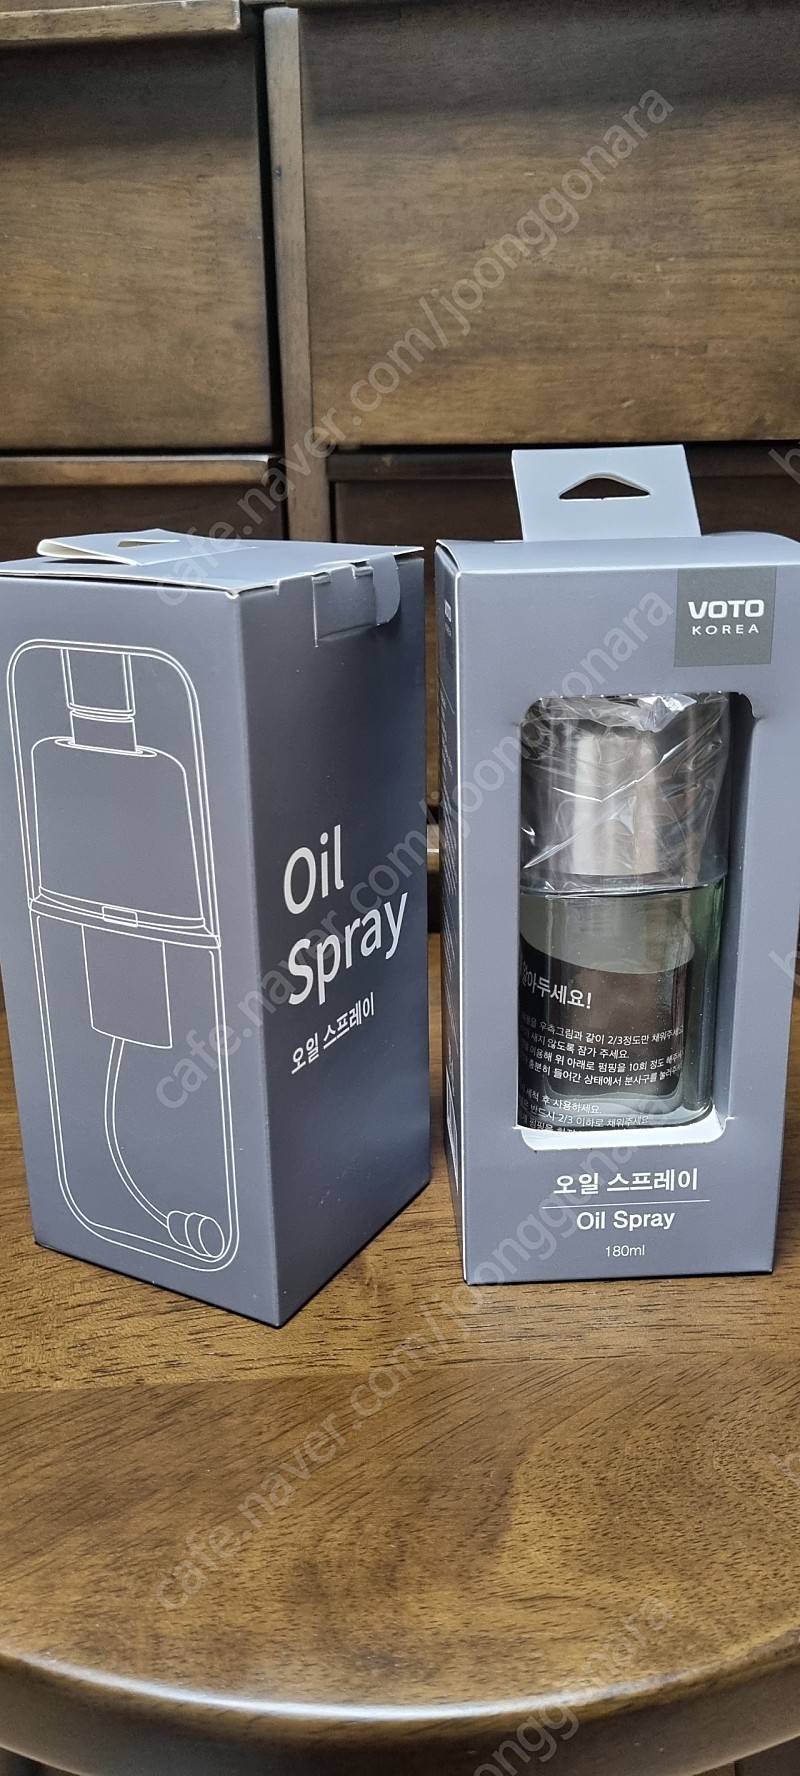 (새상품) 보토 오일 스프레이 / 에어프라이어 / oil spray